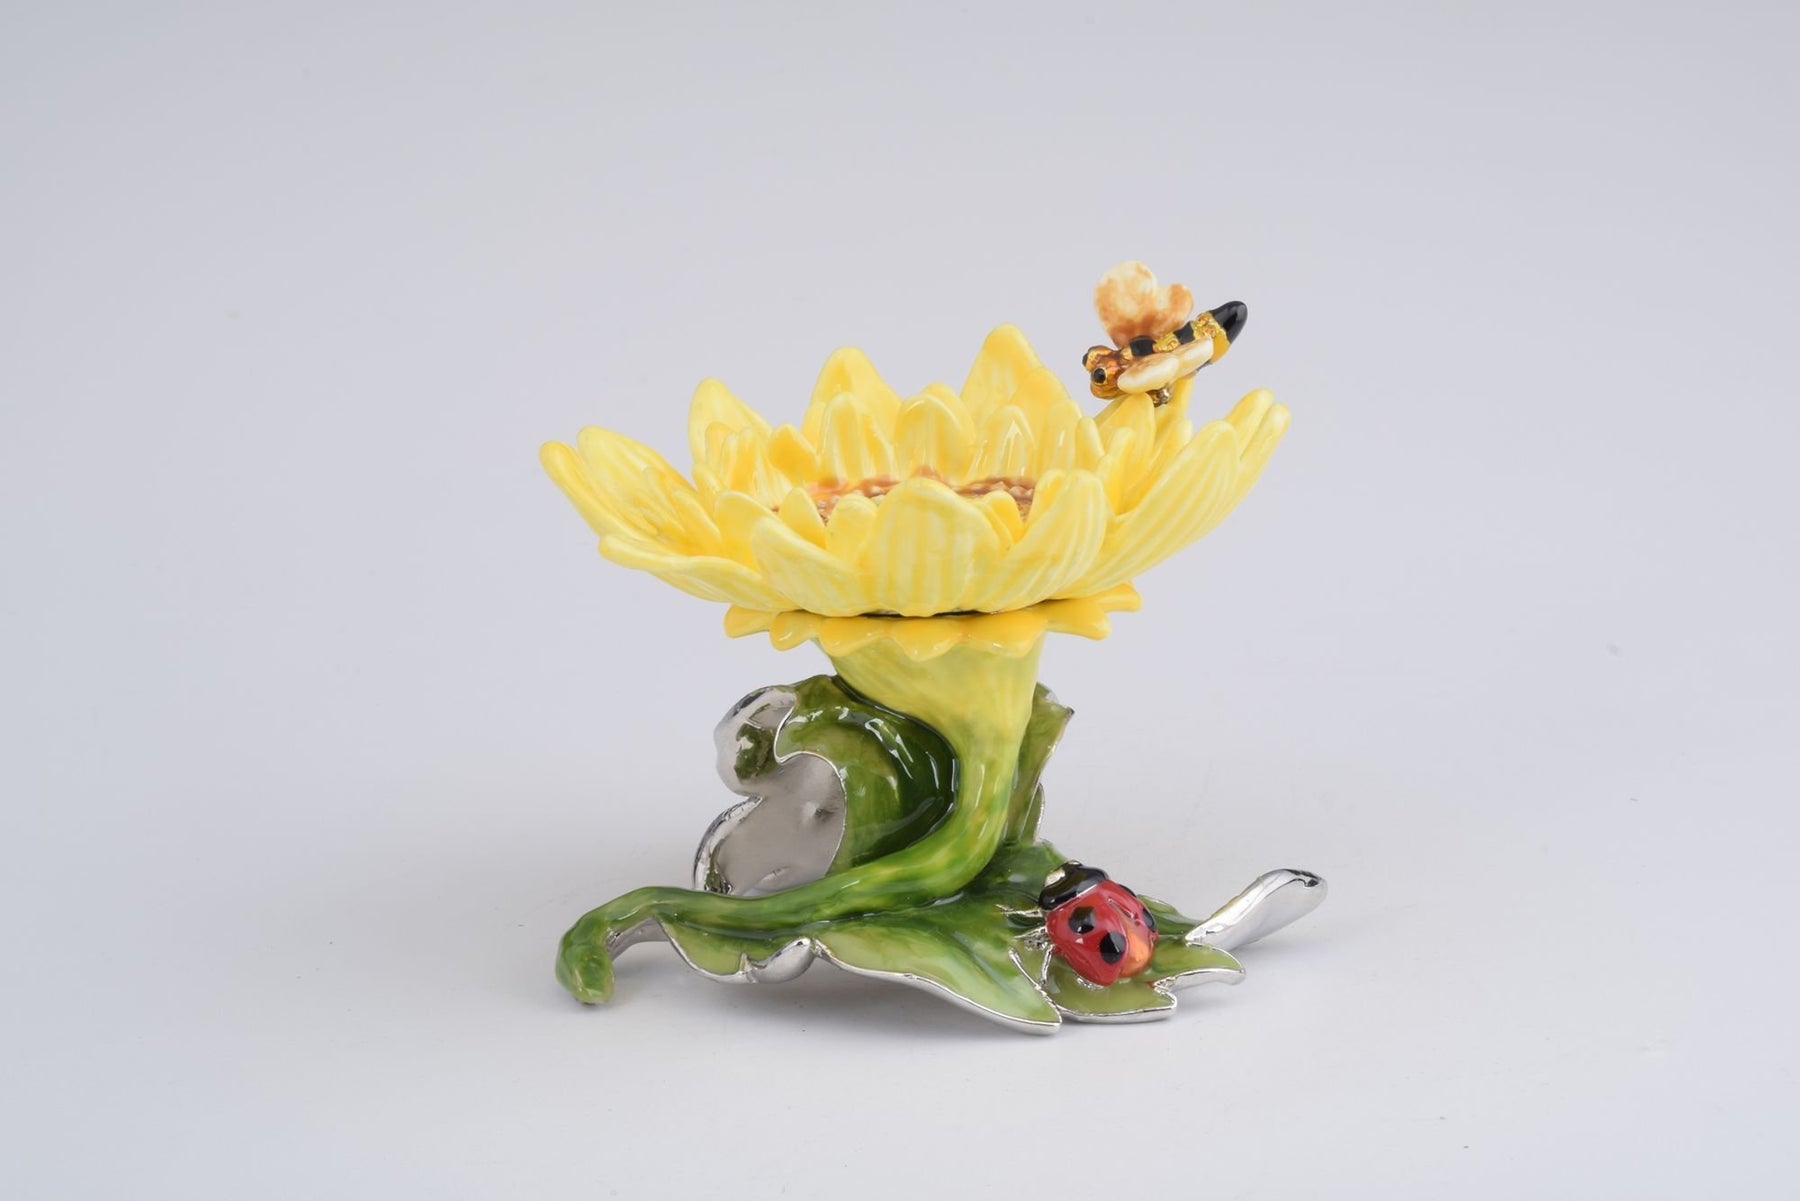 Keren Kopal Yellow Sunflower  83.50